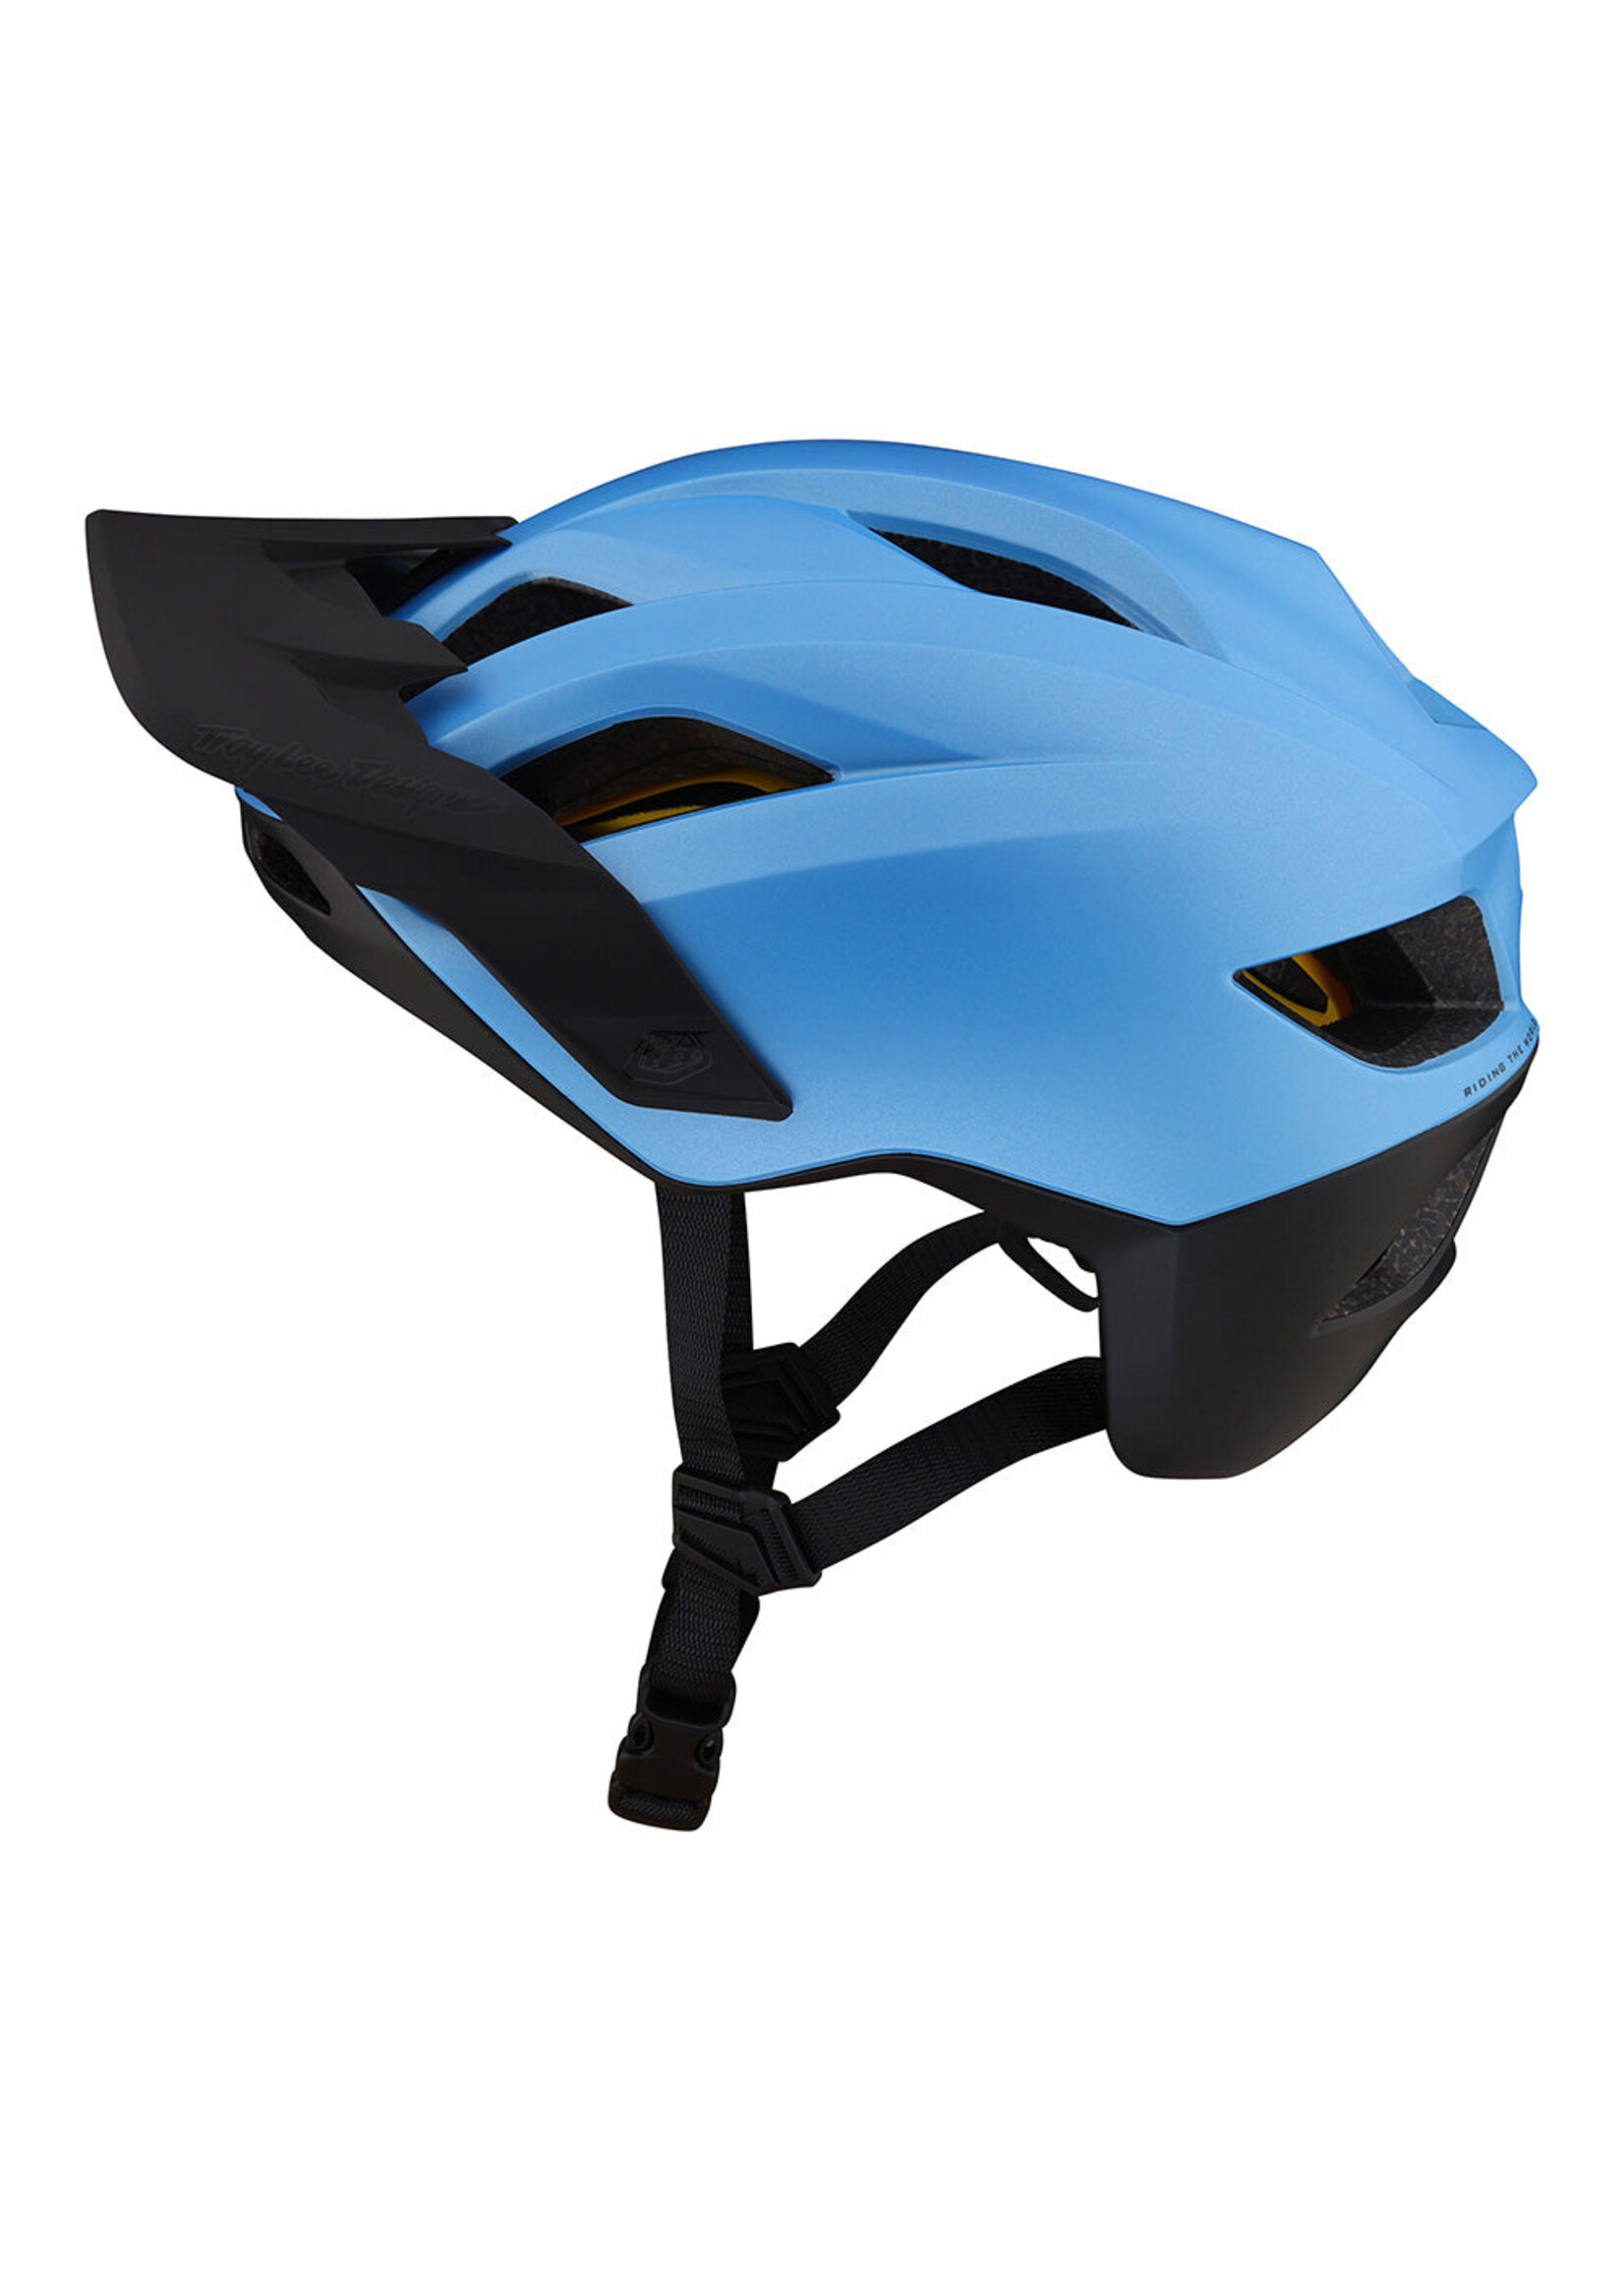 Troy Lee Designs Flowline Helmet with MIPS - Orbit Oasis Blue